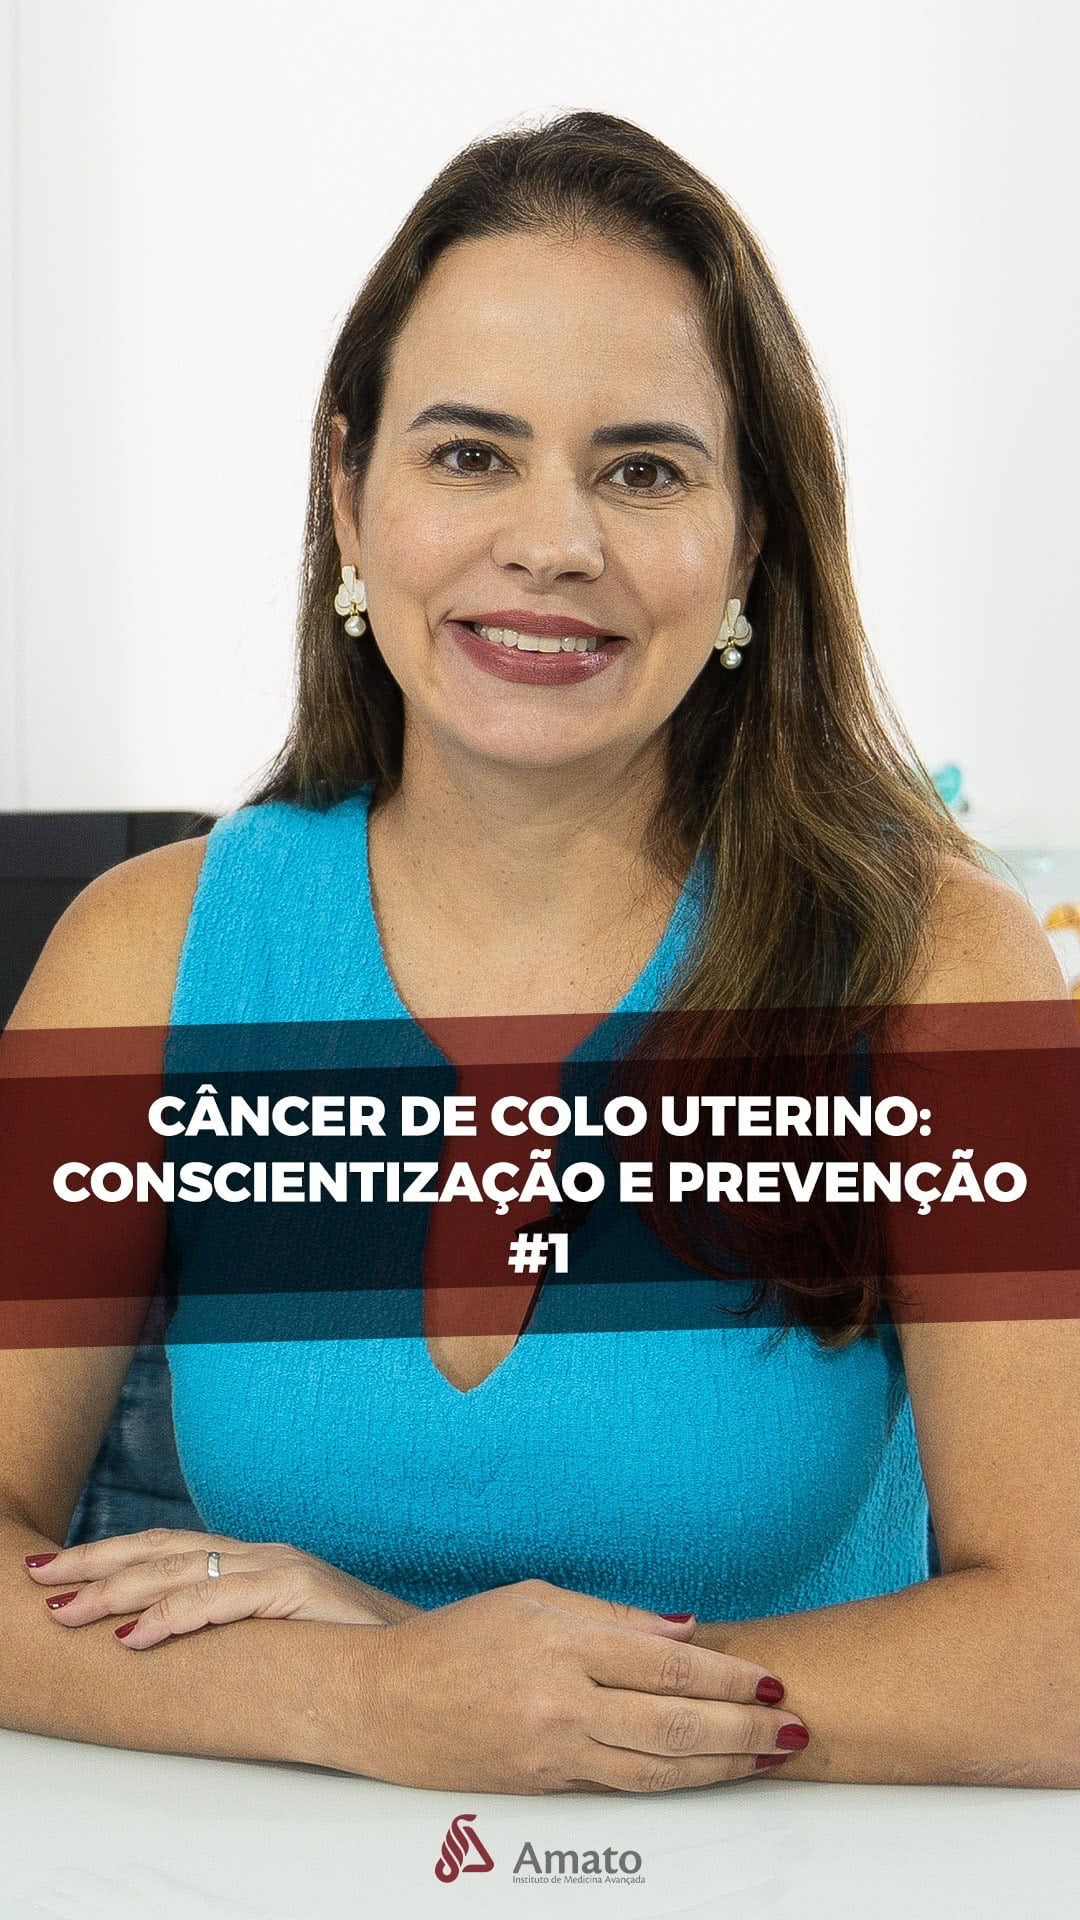 Imagem de uma mulher sorridente, segurando um cartaz com a mensagem "Previna-se. Faça o exame preventivo". A imagem faz parte de uma campanha de conscientização e prevenção do câncer de colo de útero.